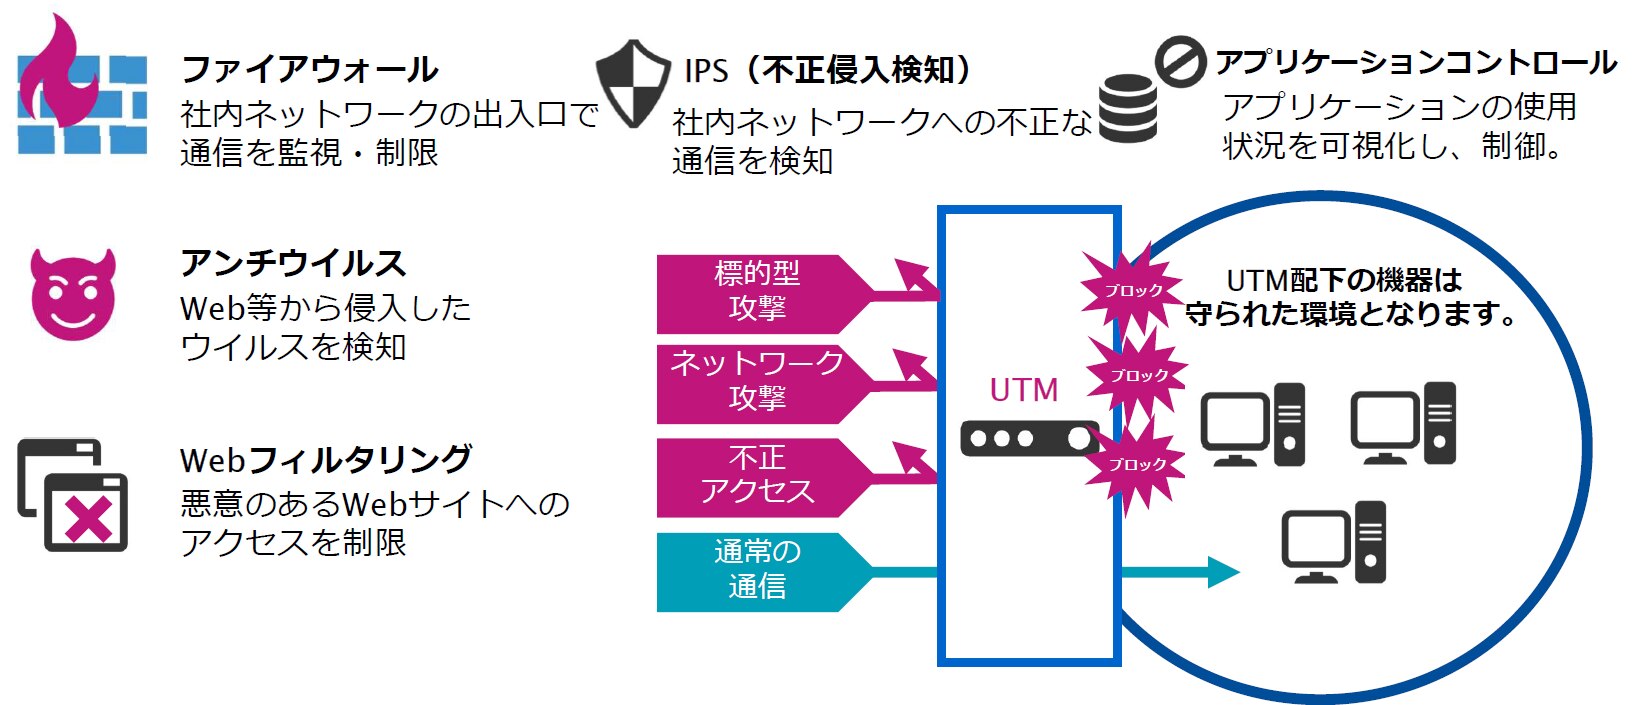 UTMはどのようなセキュリティ機能によって、守られているかをご紹介